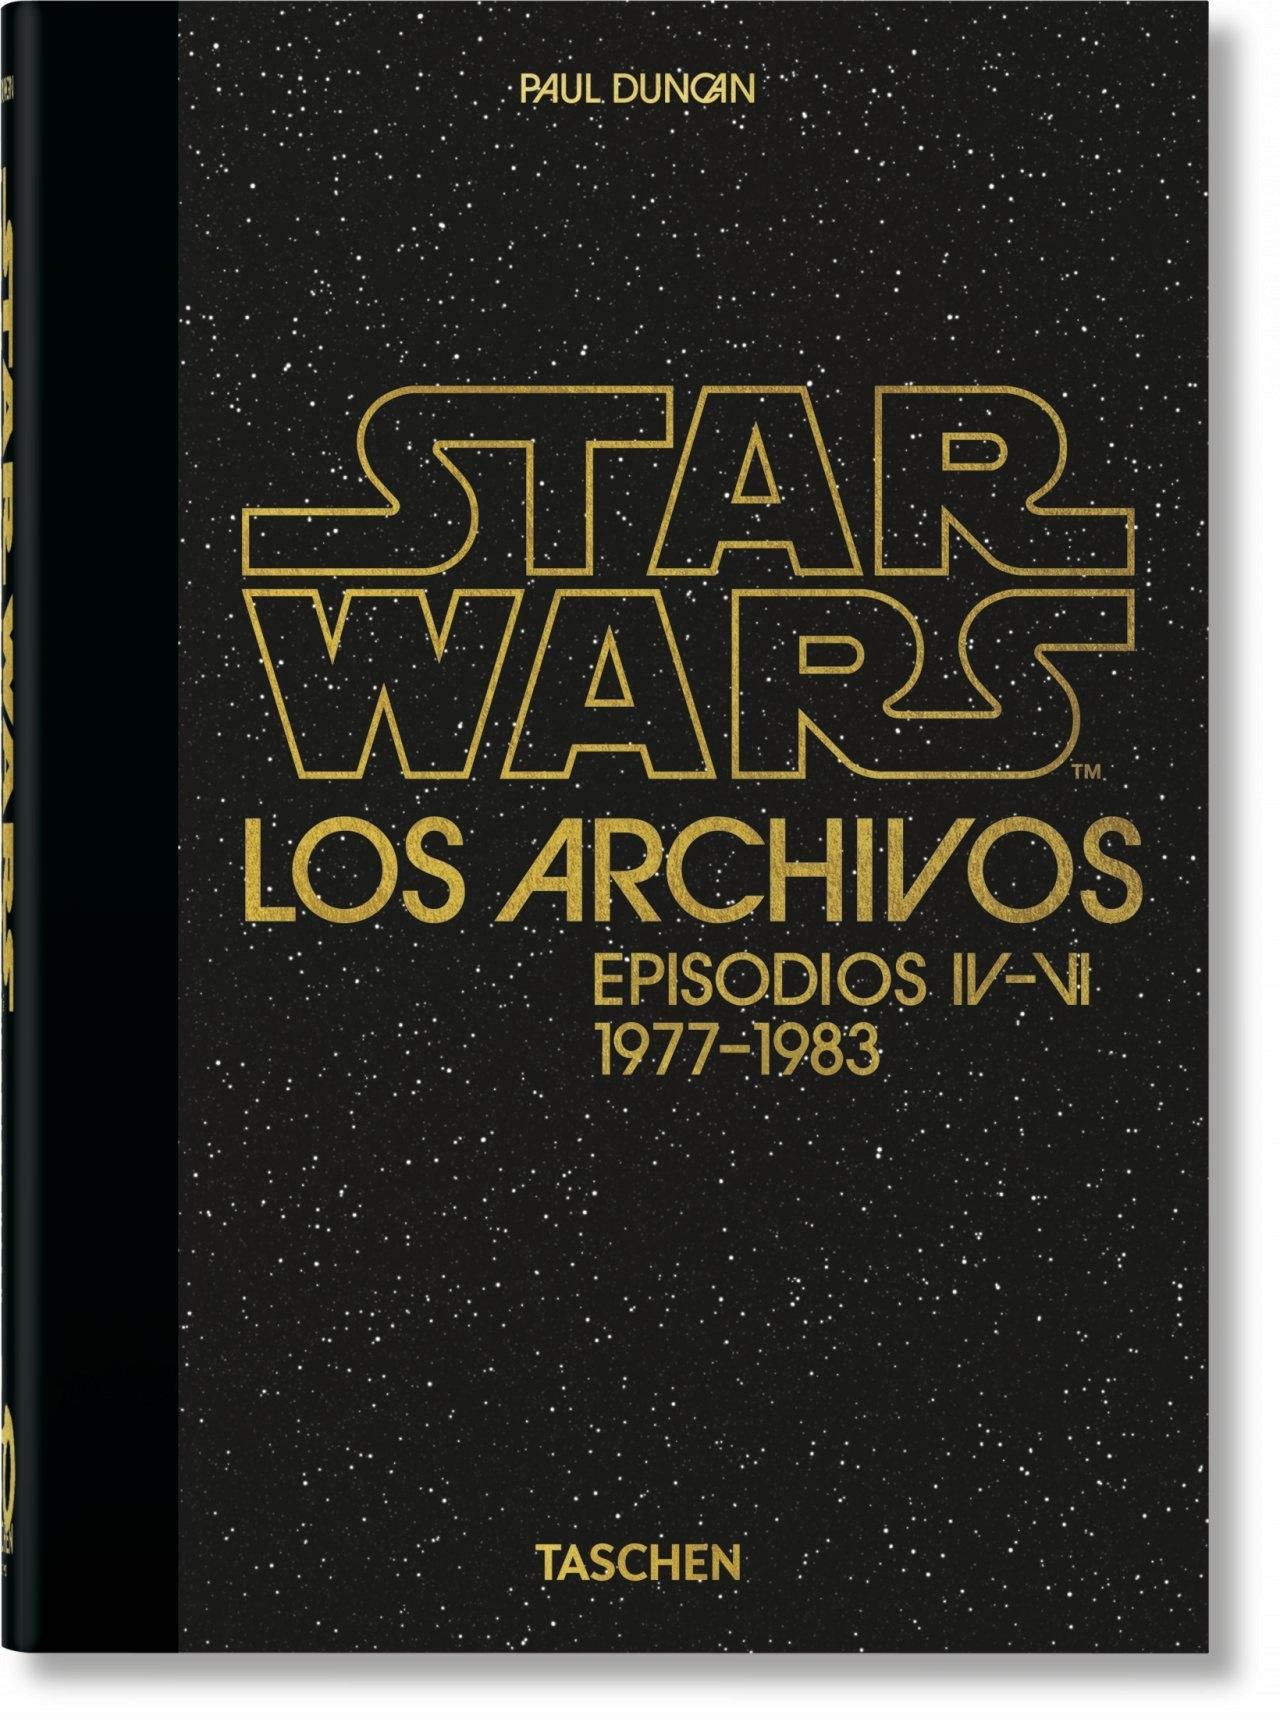  STAR WARS.  LOS ARCHIVOS EPISODIOS IV - VI 1977-1983 40TH ANNIVERSARY EDITION. 